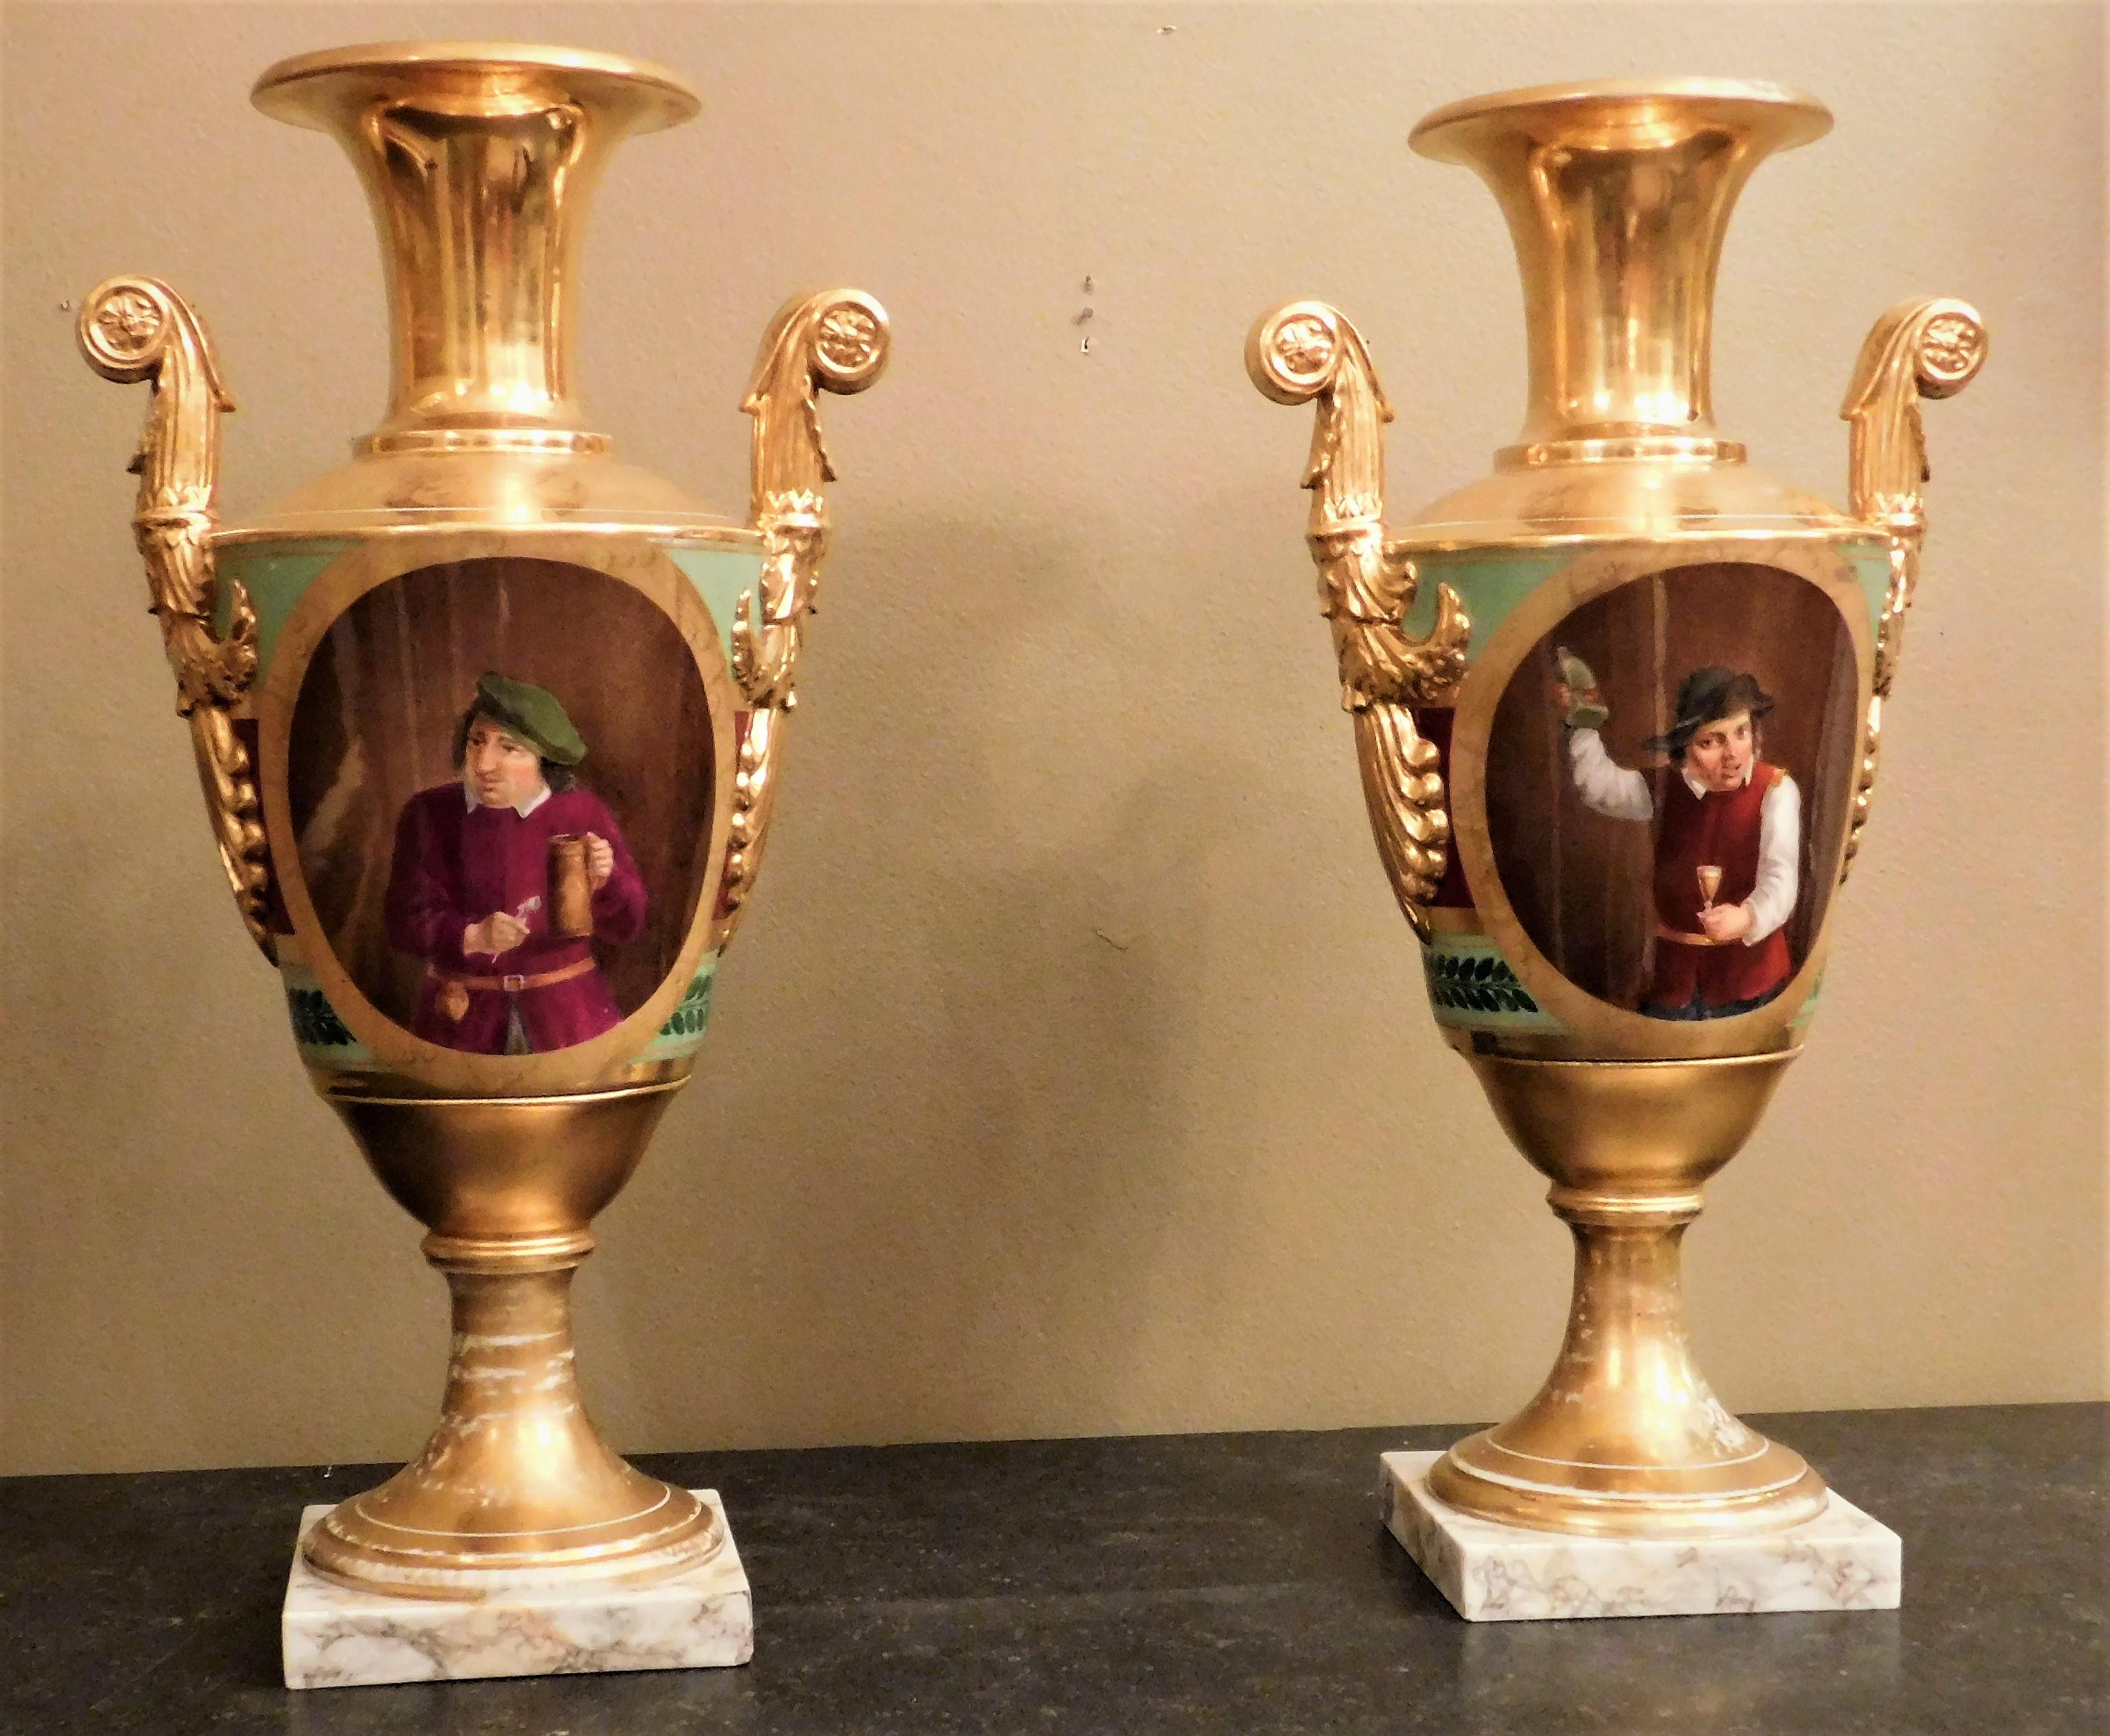 Dieses Paar neoklassischer Vasen in konischer Form aus dem Vieux Paris hat auf einer Seite klassisch-römische Motive. Die Porträts auf der anderen Seite zeigen auf der einen Vase einen Alkoholiker und auf der anderen Vase einen Abstinenzler.